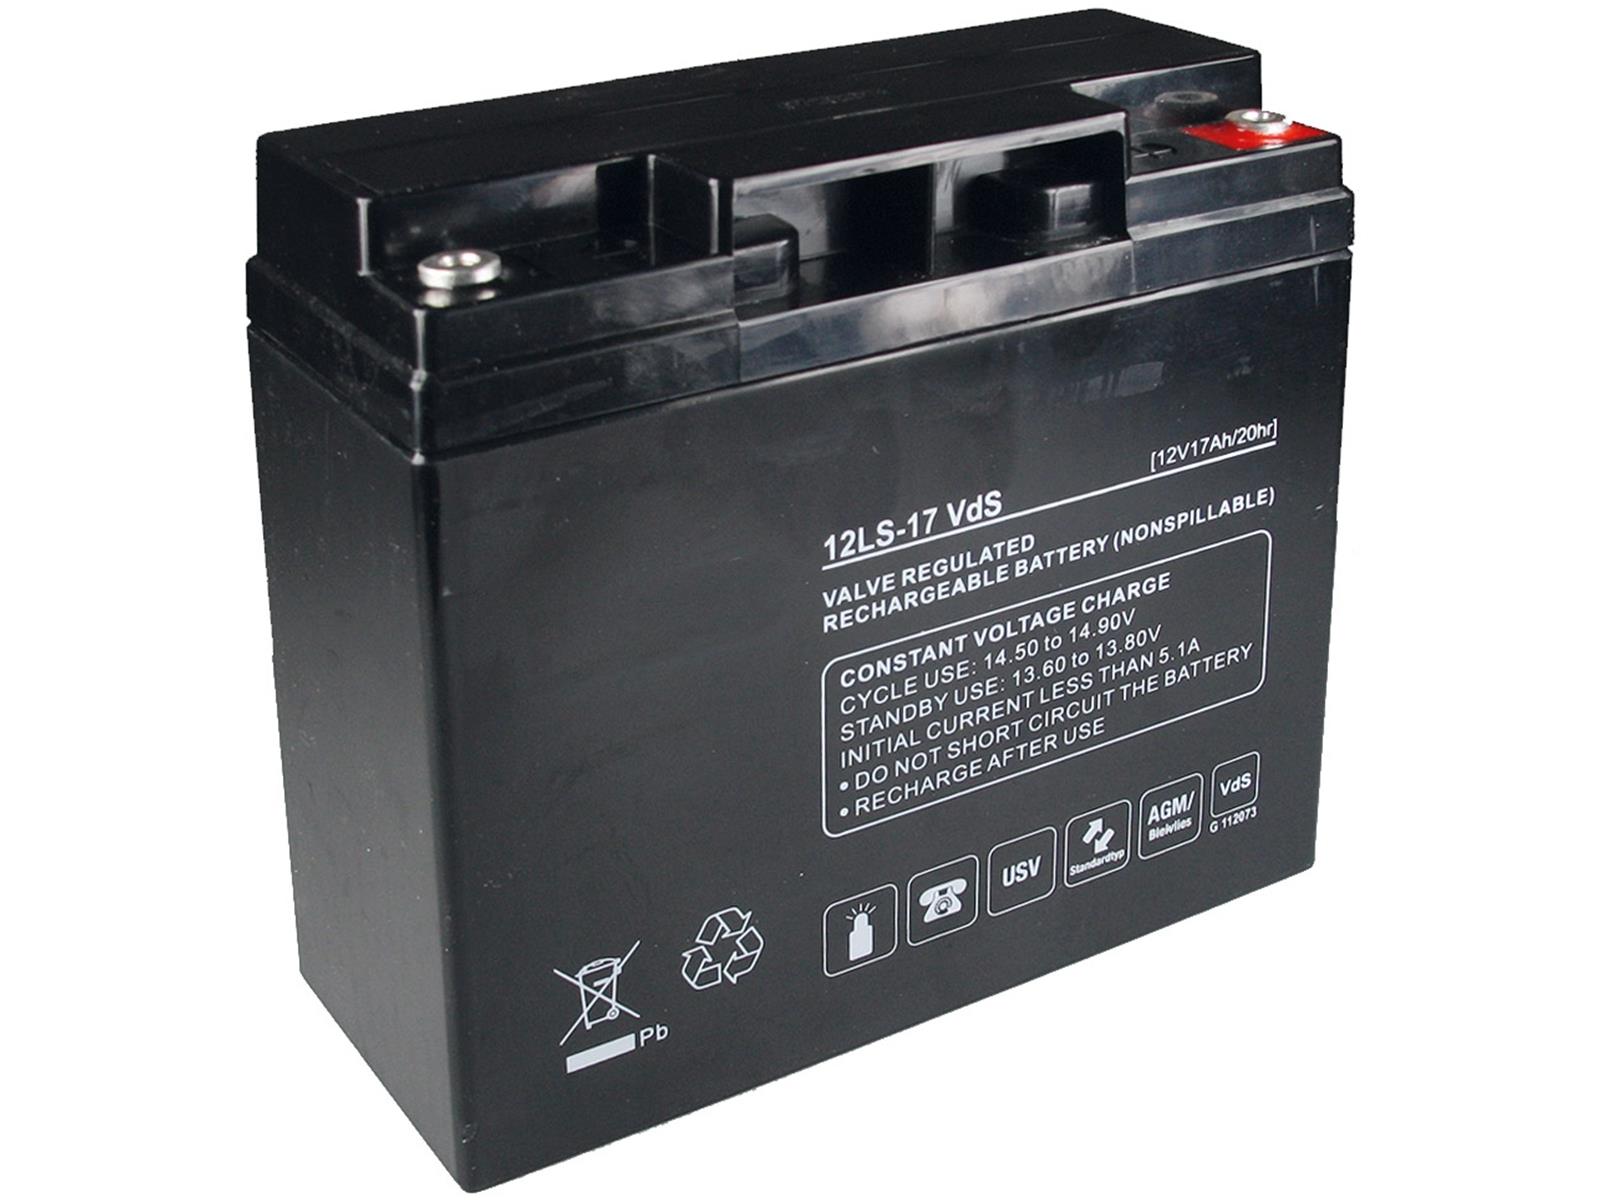 Bleiakku Q-Batteries 12V/17AhVdS-Zulassung, LxBxH 181x77x167mm, 5,1kg